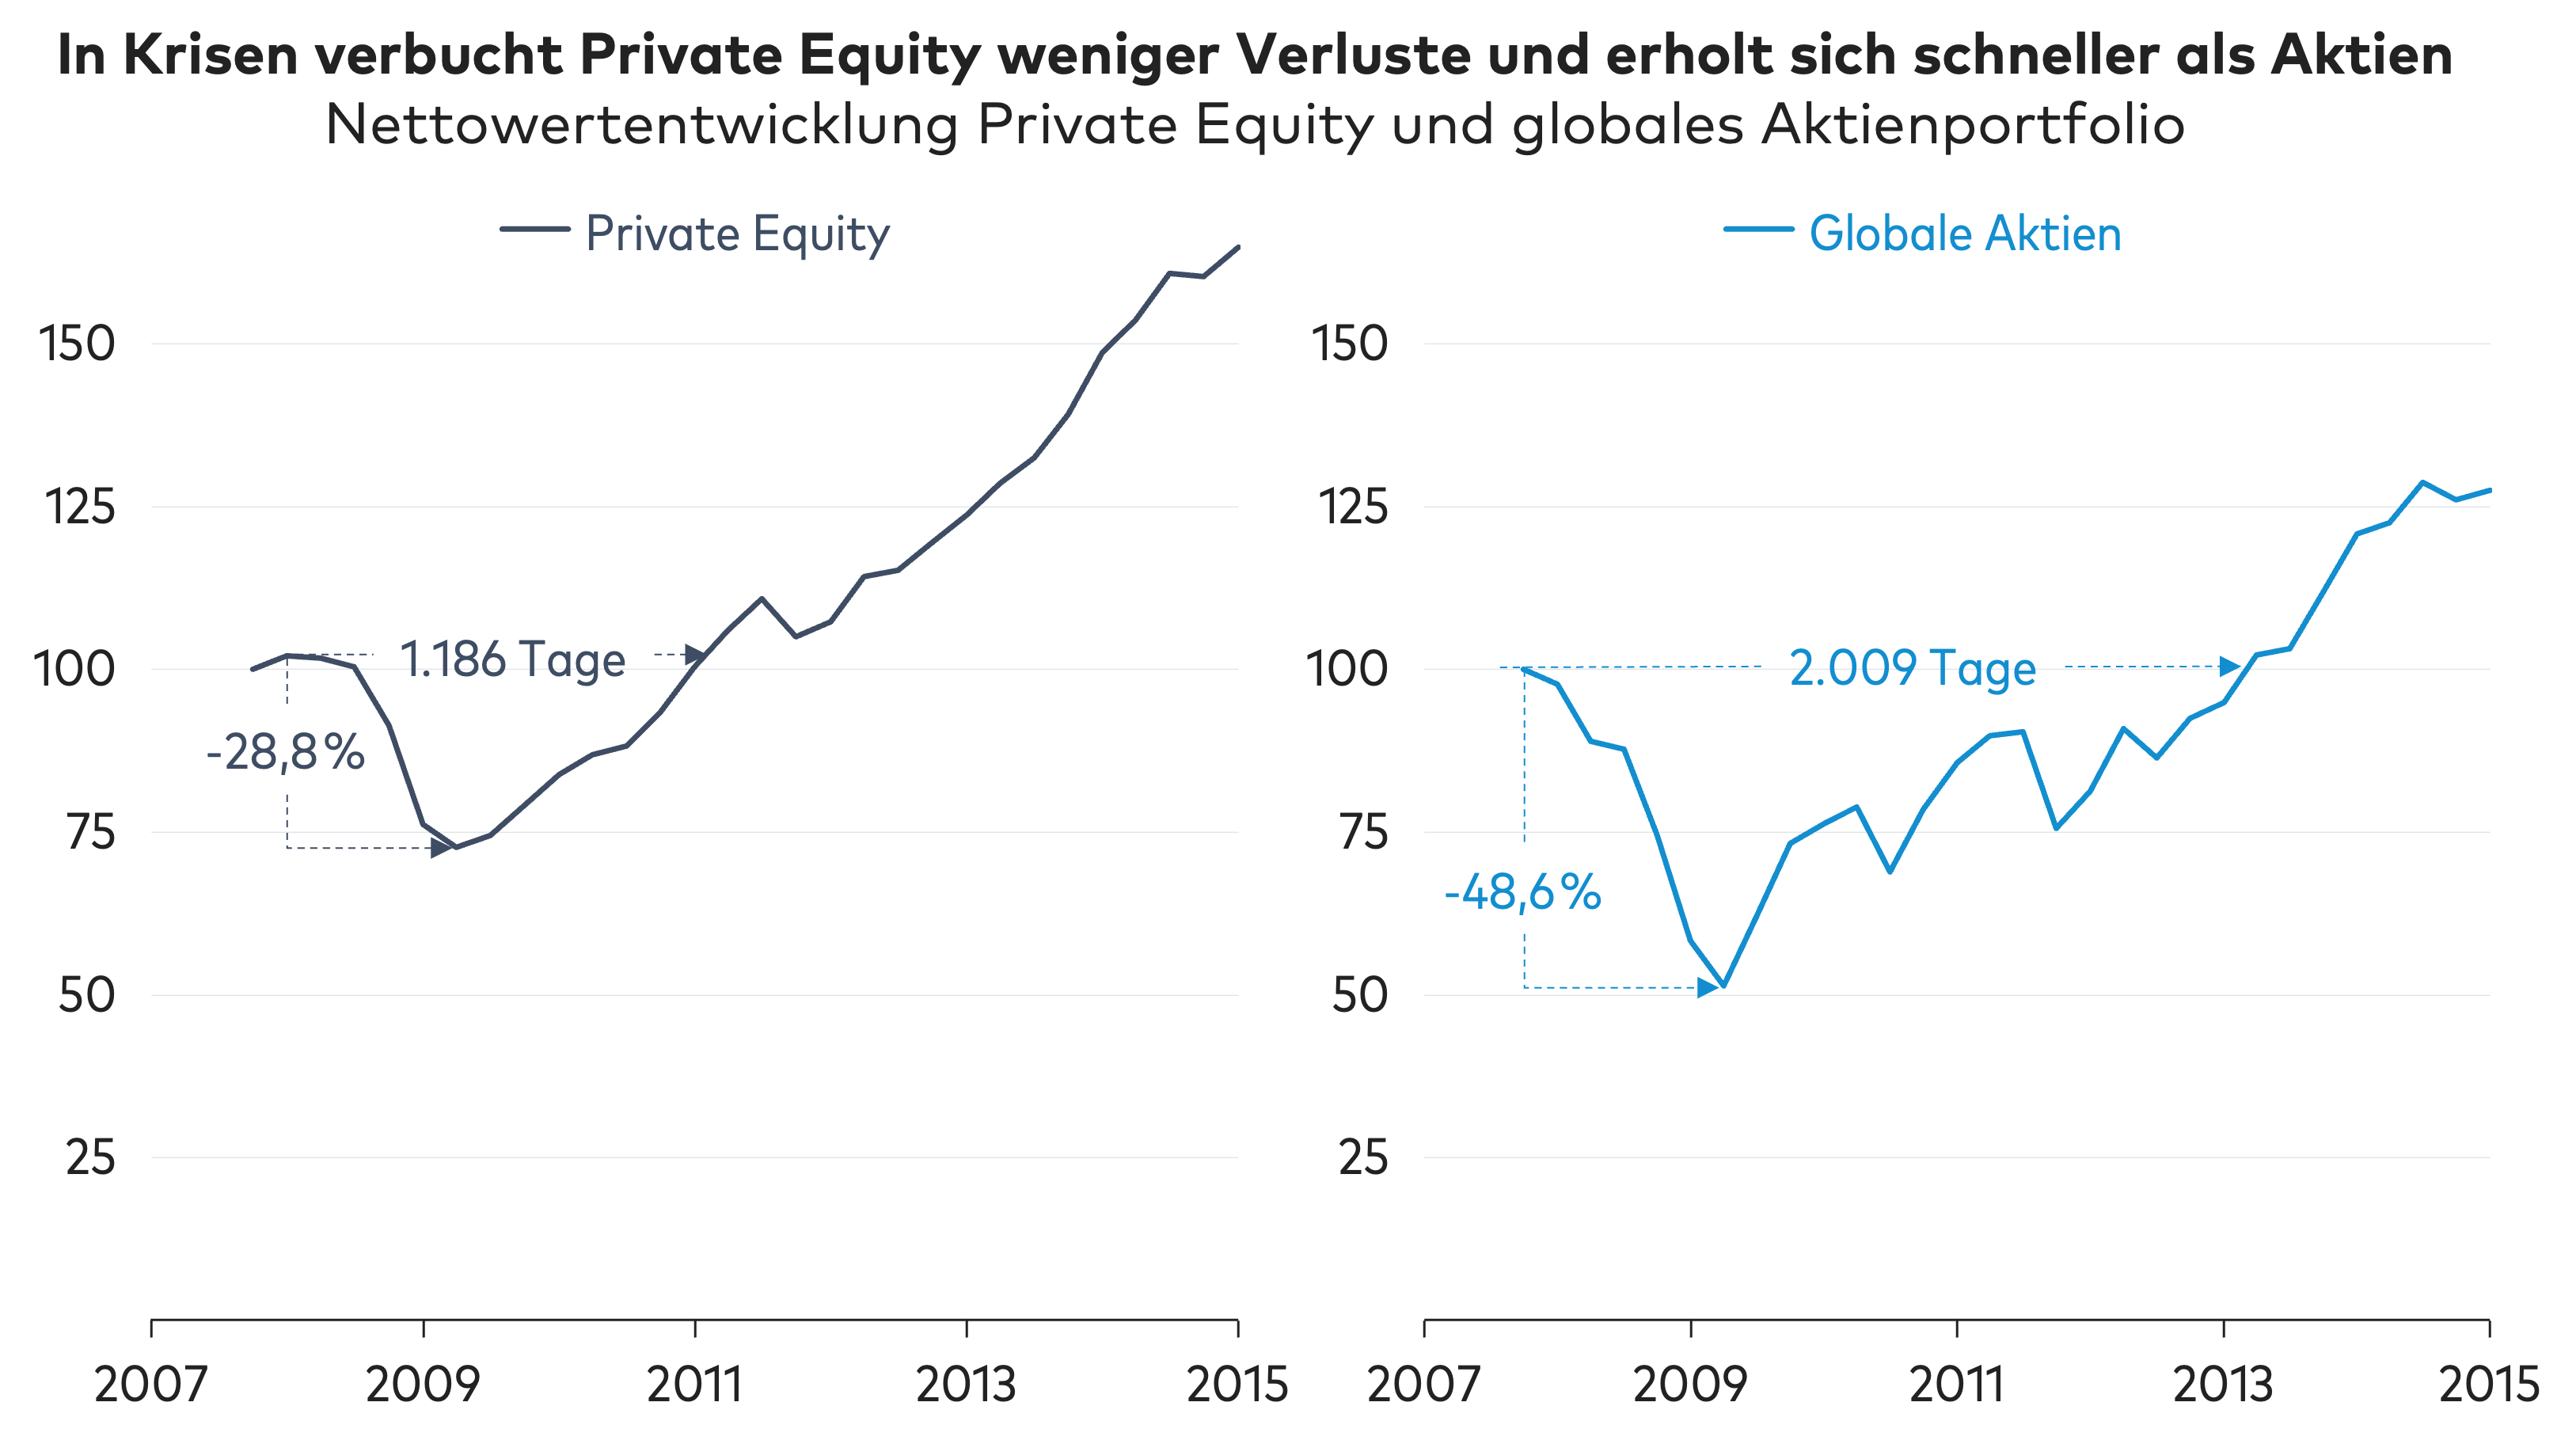 1.12.4 In Krisen verbucht Private Equity weniger Verluste und erholt sich schneller als Aktien